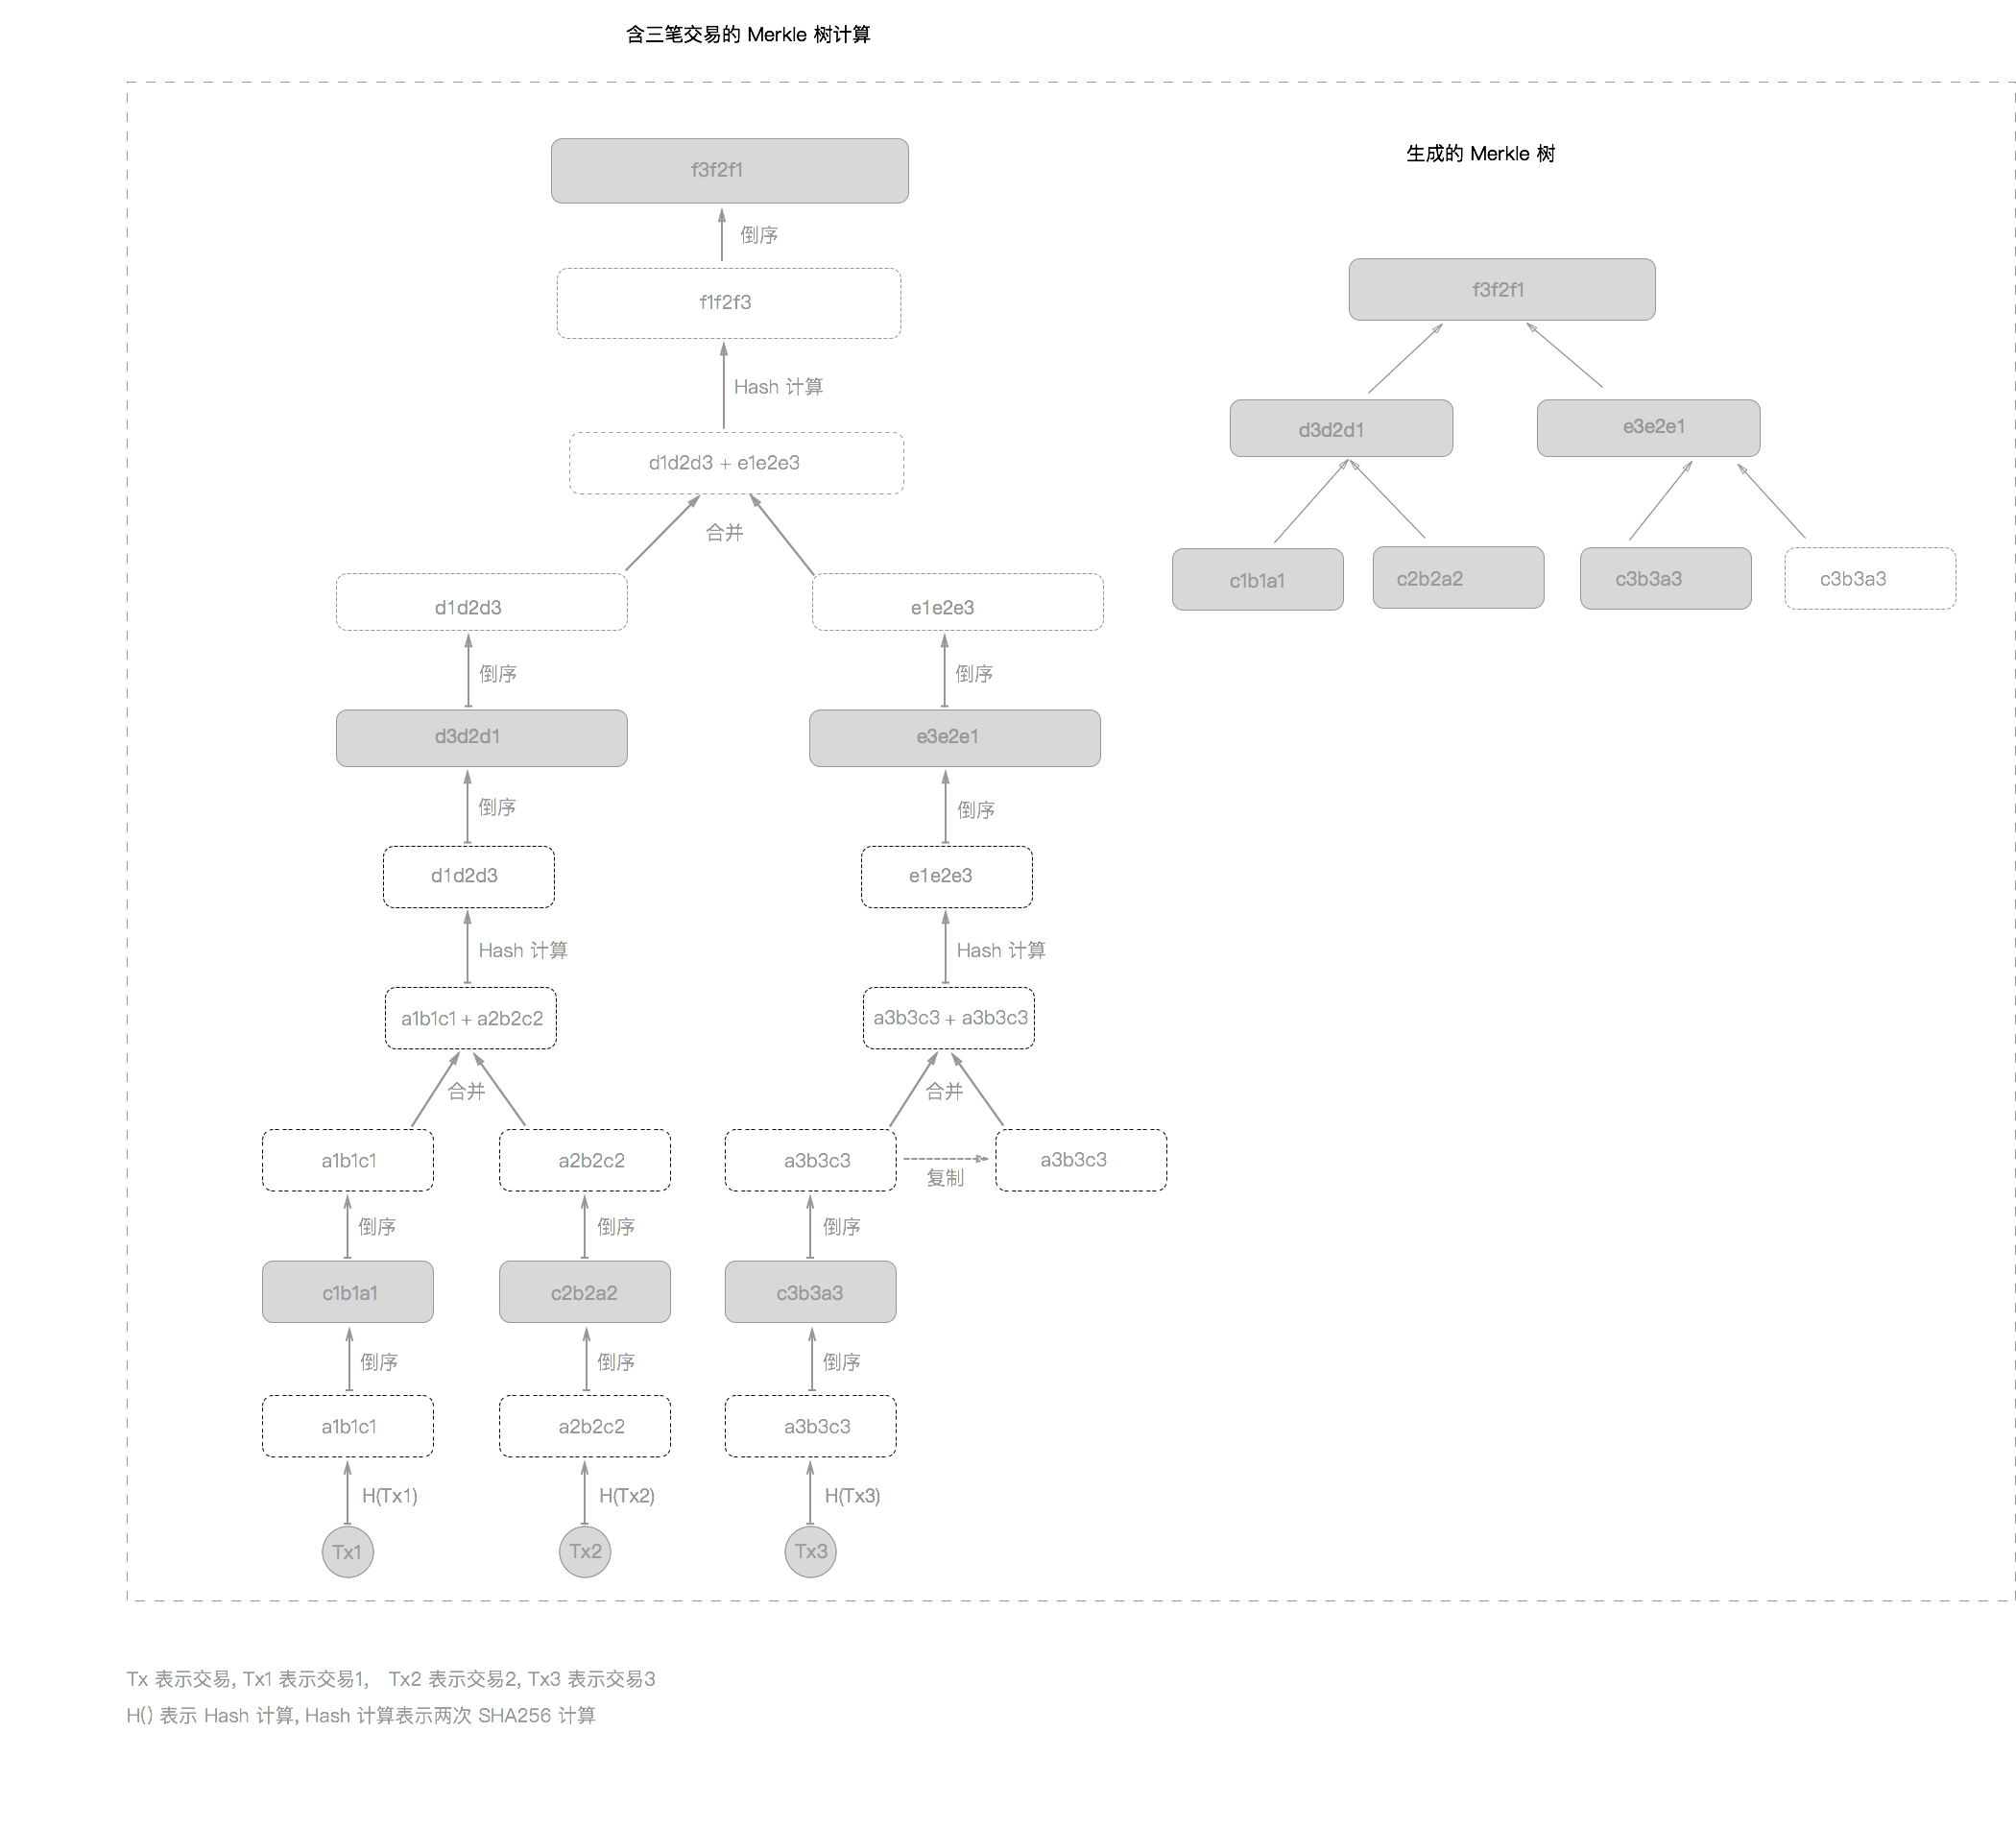 比特币 Merkle 树计算过程